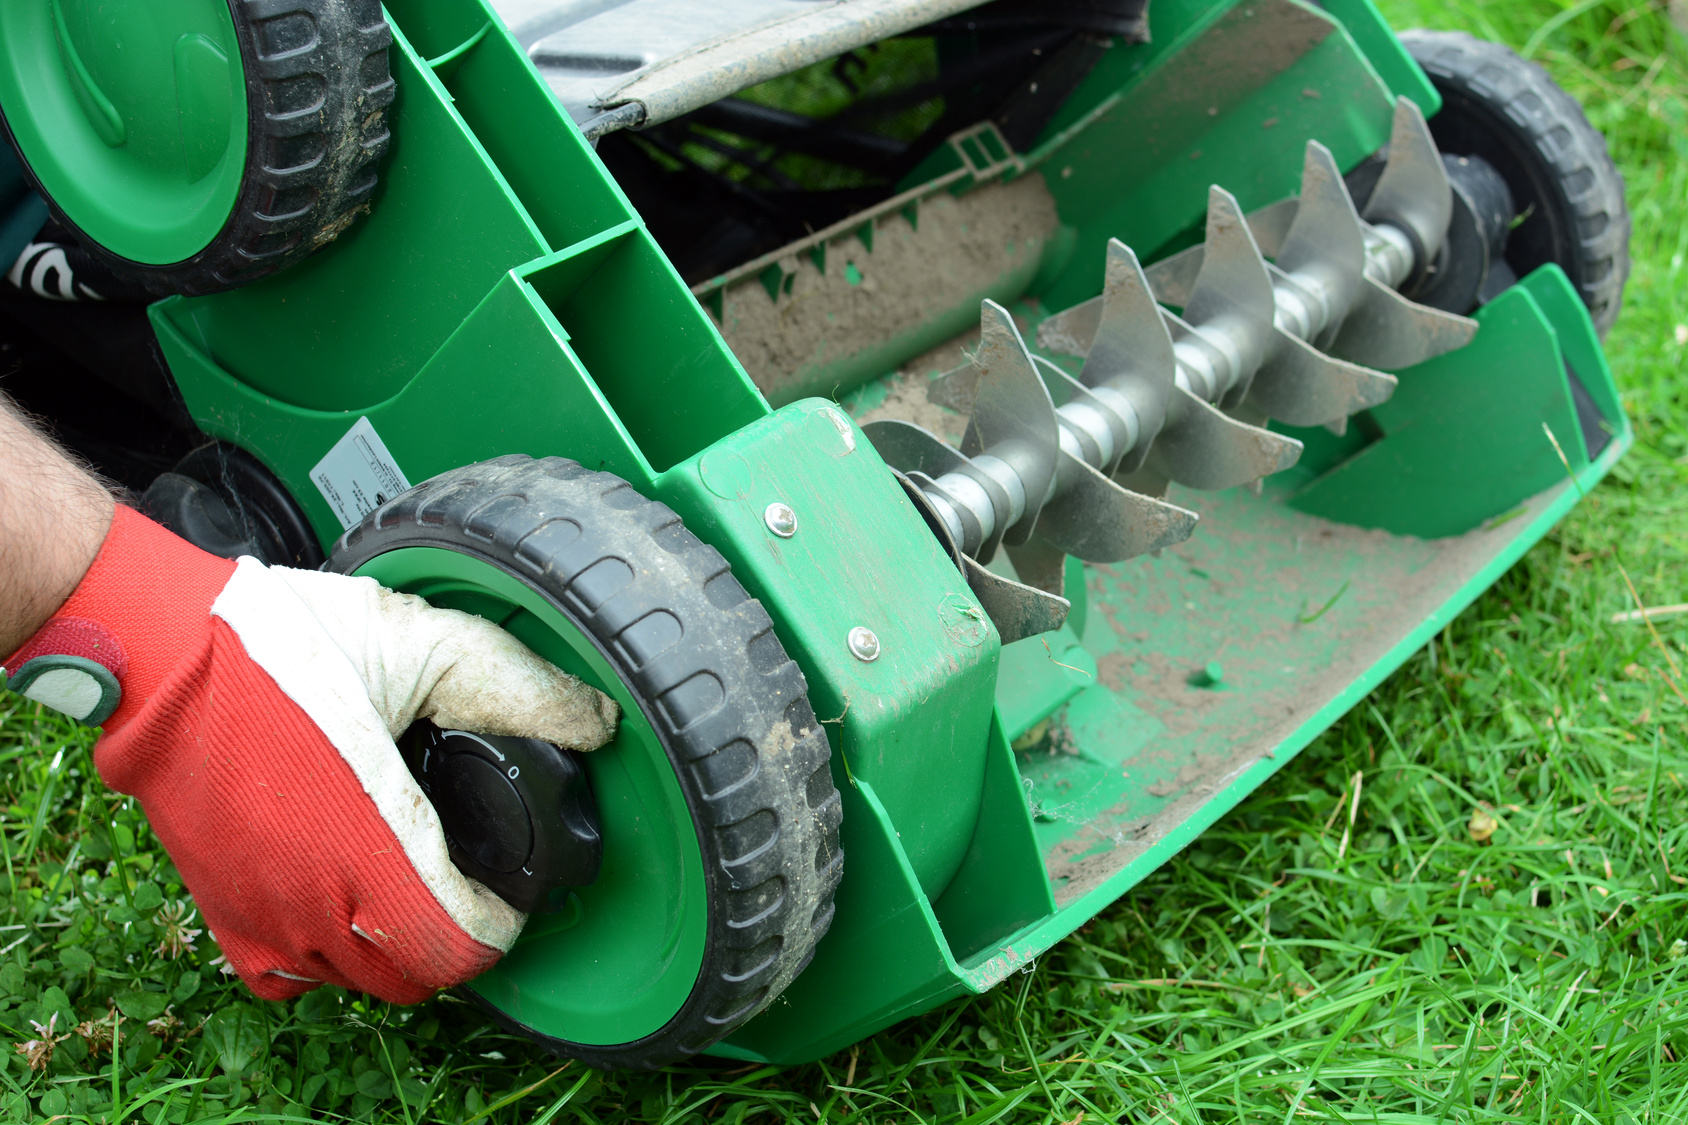 Déchaumage de la pelouse - quel est le meilleur outil de déchaumage ?